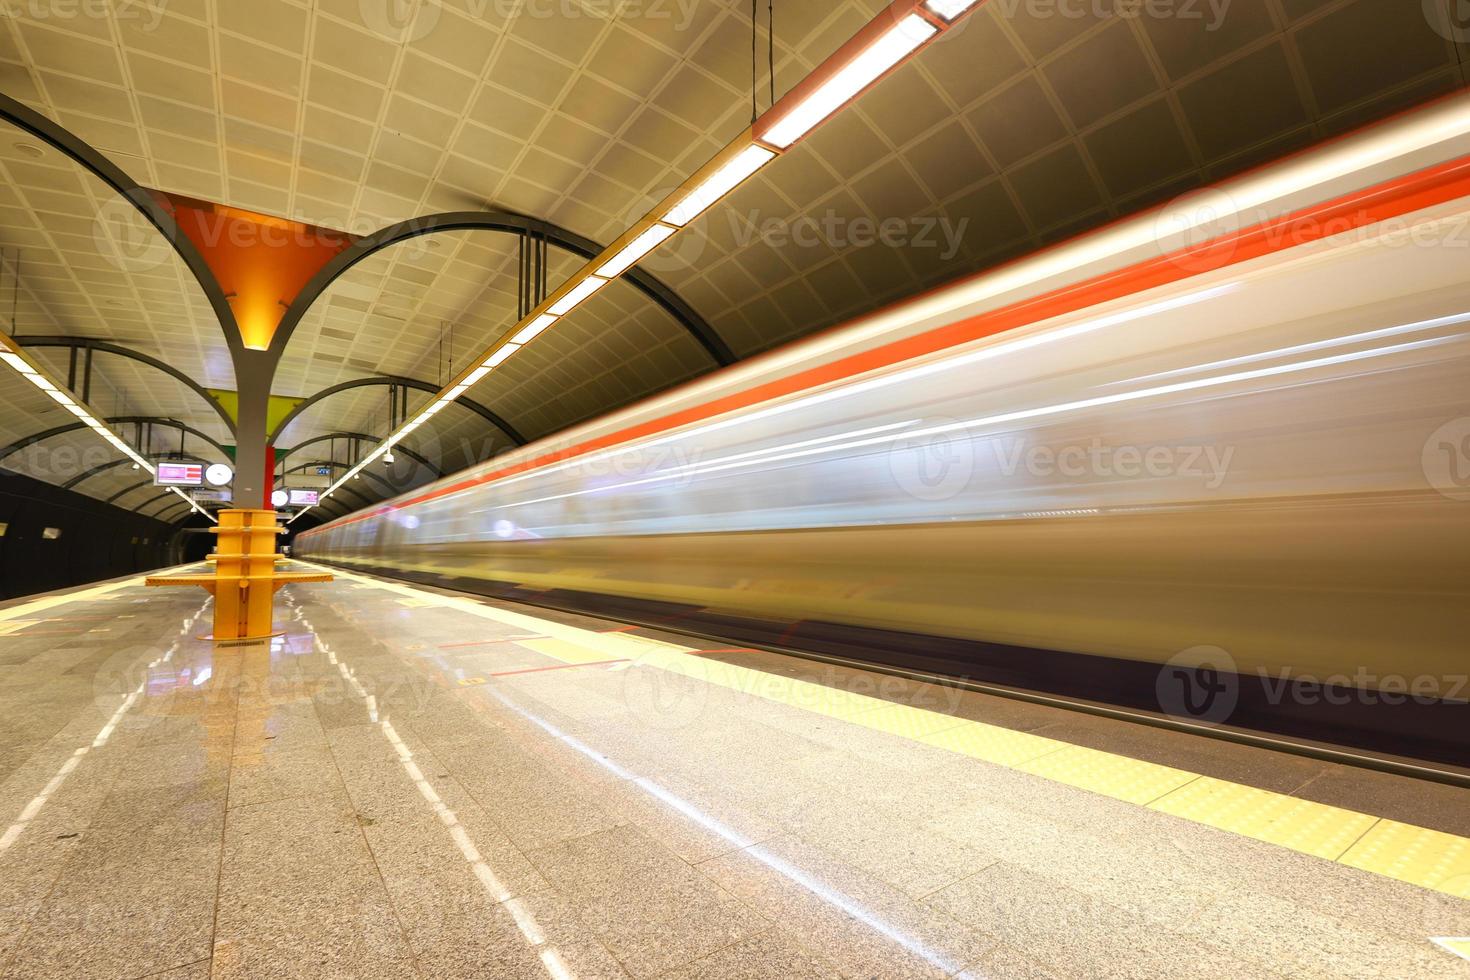 metro die in een station beweegt foto